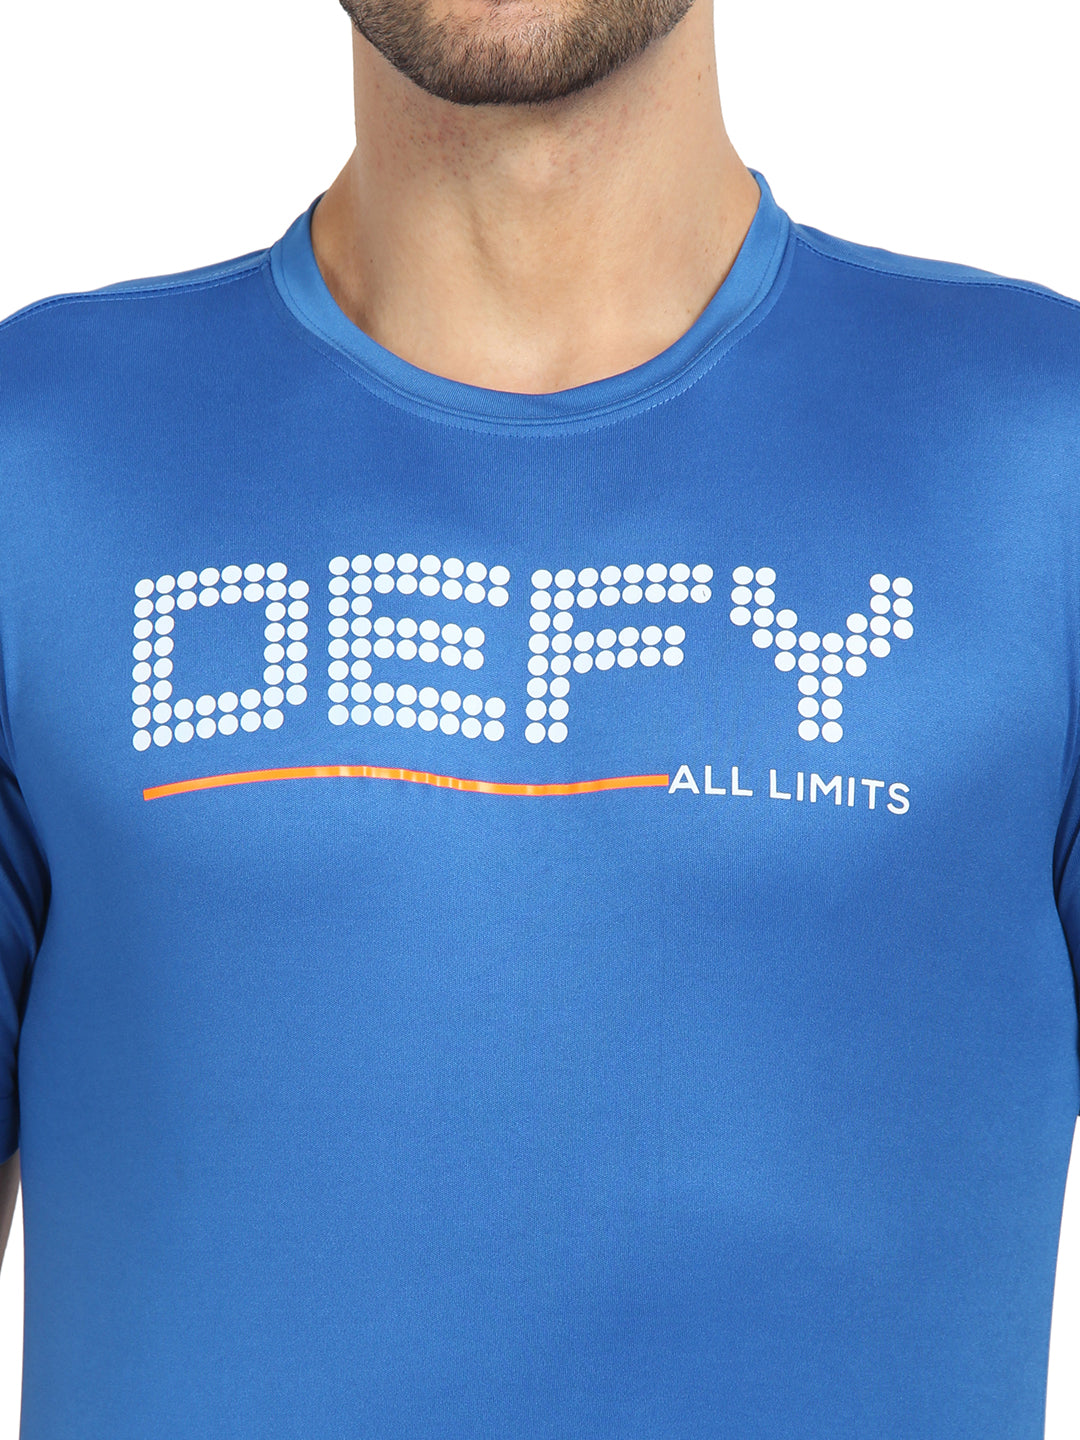 DEFY TEE Men Tshirts & Graphic Tees